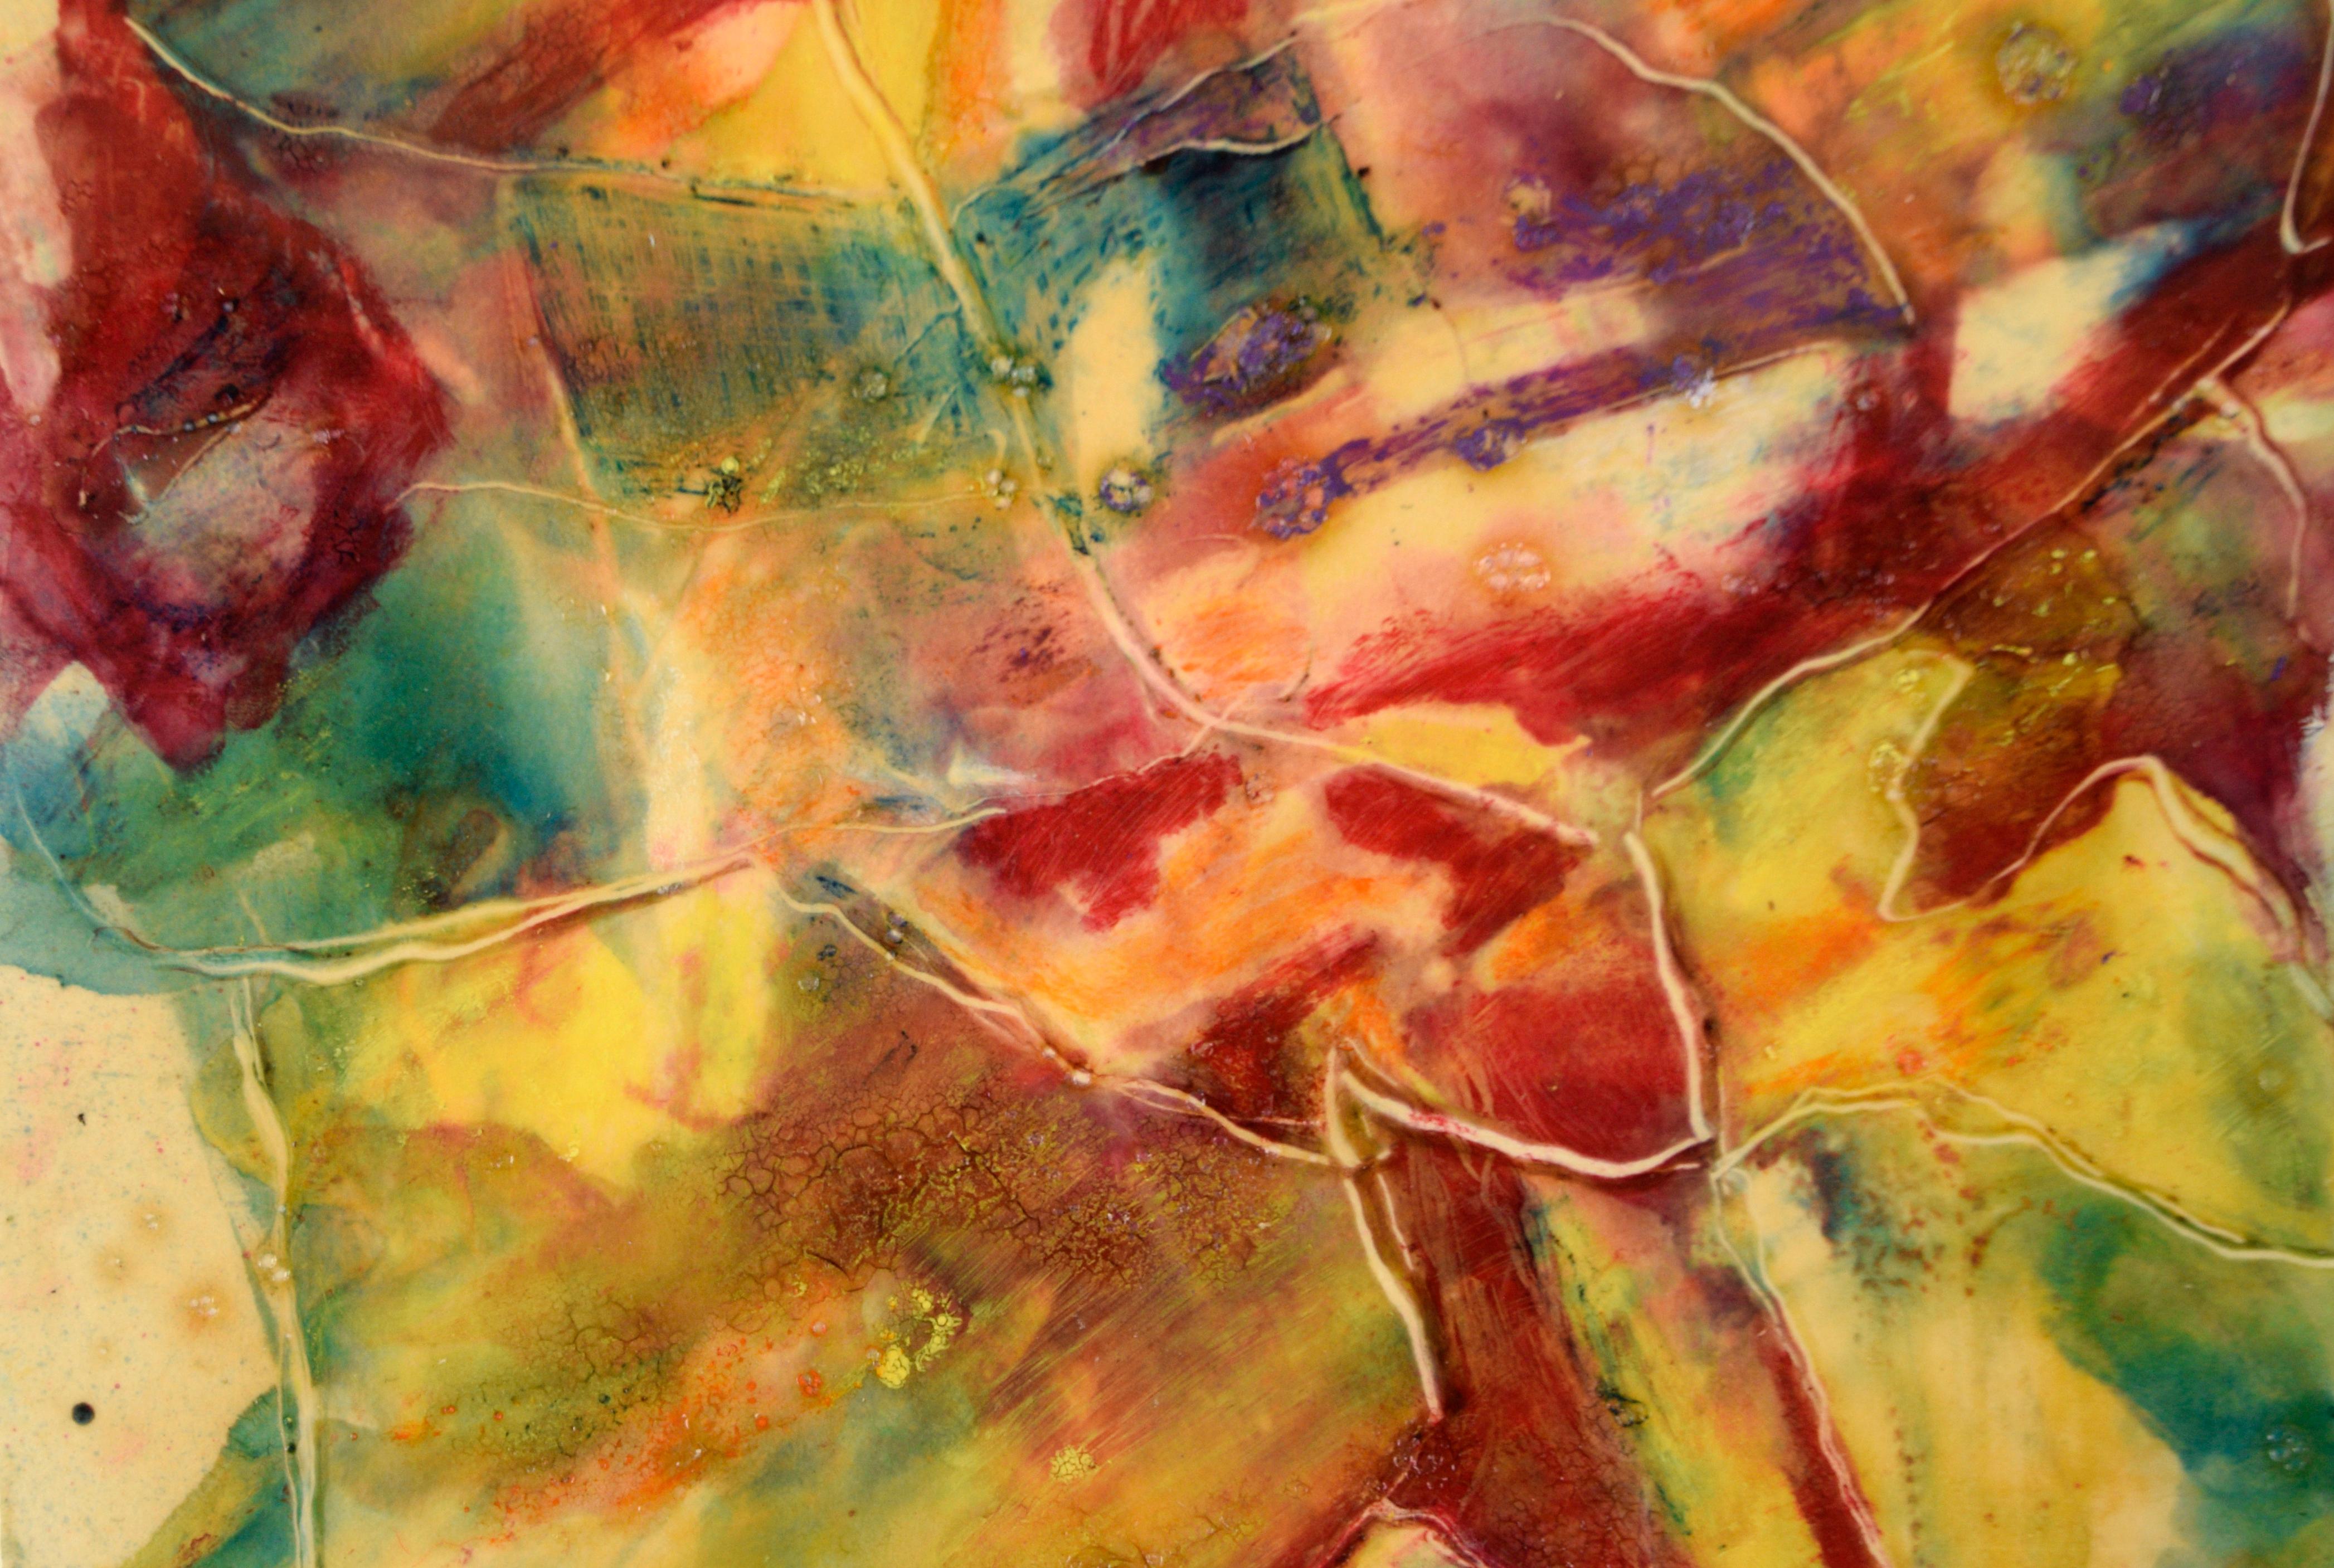 Helles und dynamisches abstraktes Werk von William Aldridge (20. Jahrhundert). Auf eine glatte Oberfläche wurden Schichten von Acrylfarbe aufgetragen, die in einigen Bereichen einen transparenten Effekt erzeugen. Der Künstler hat die Farbe zerkratzt